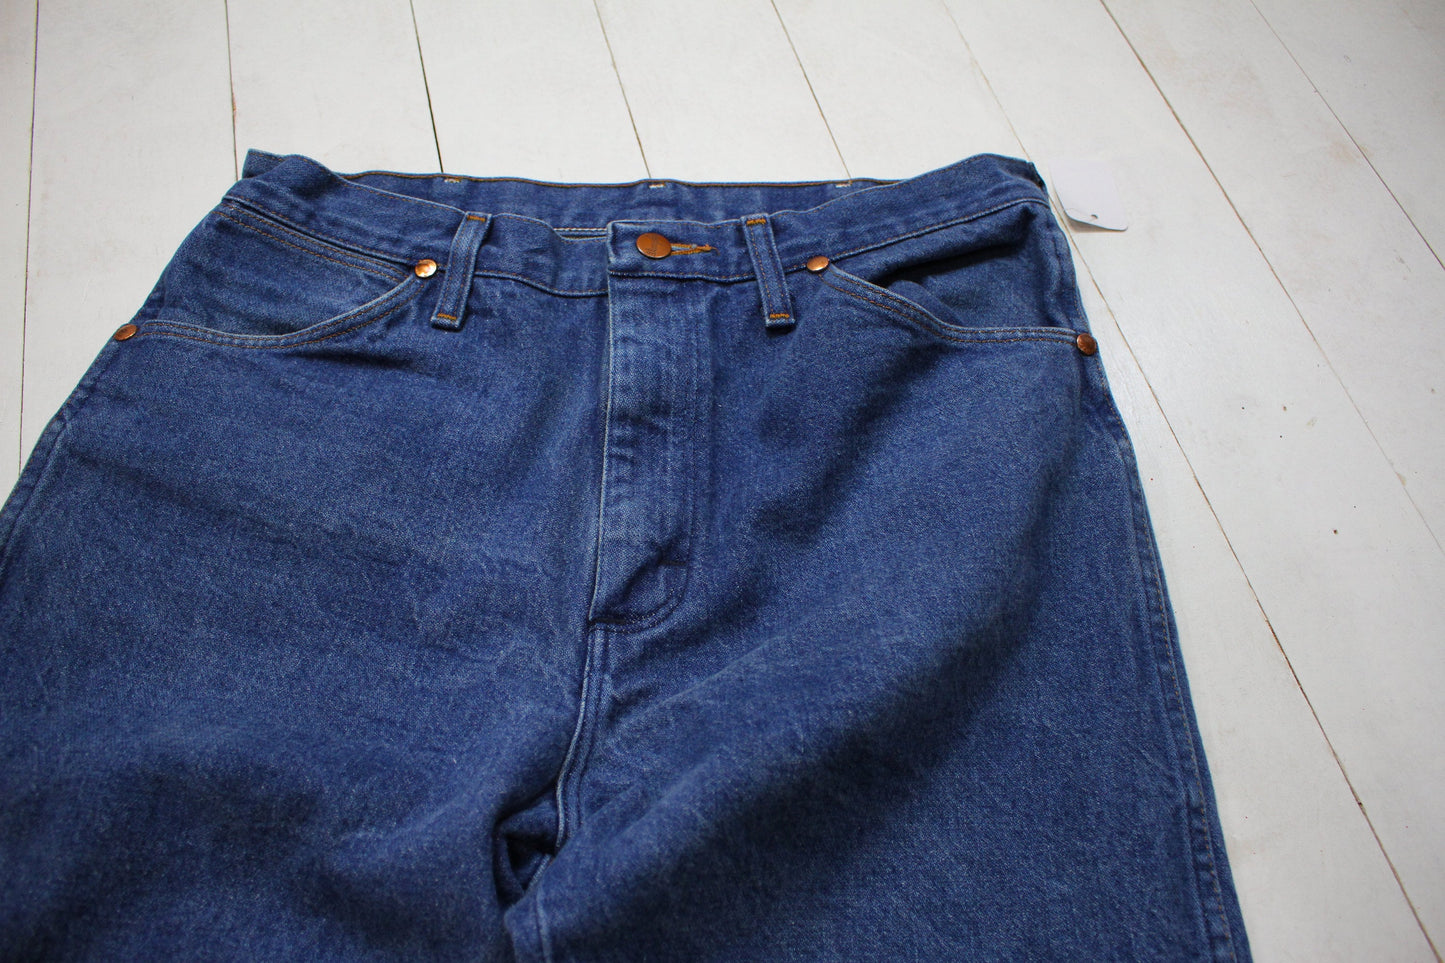 2000s Wrangler 13MWZ Blue Denim Jeans Size 31x28.5